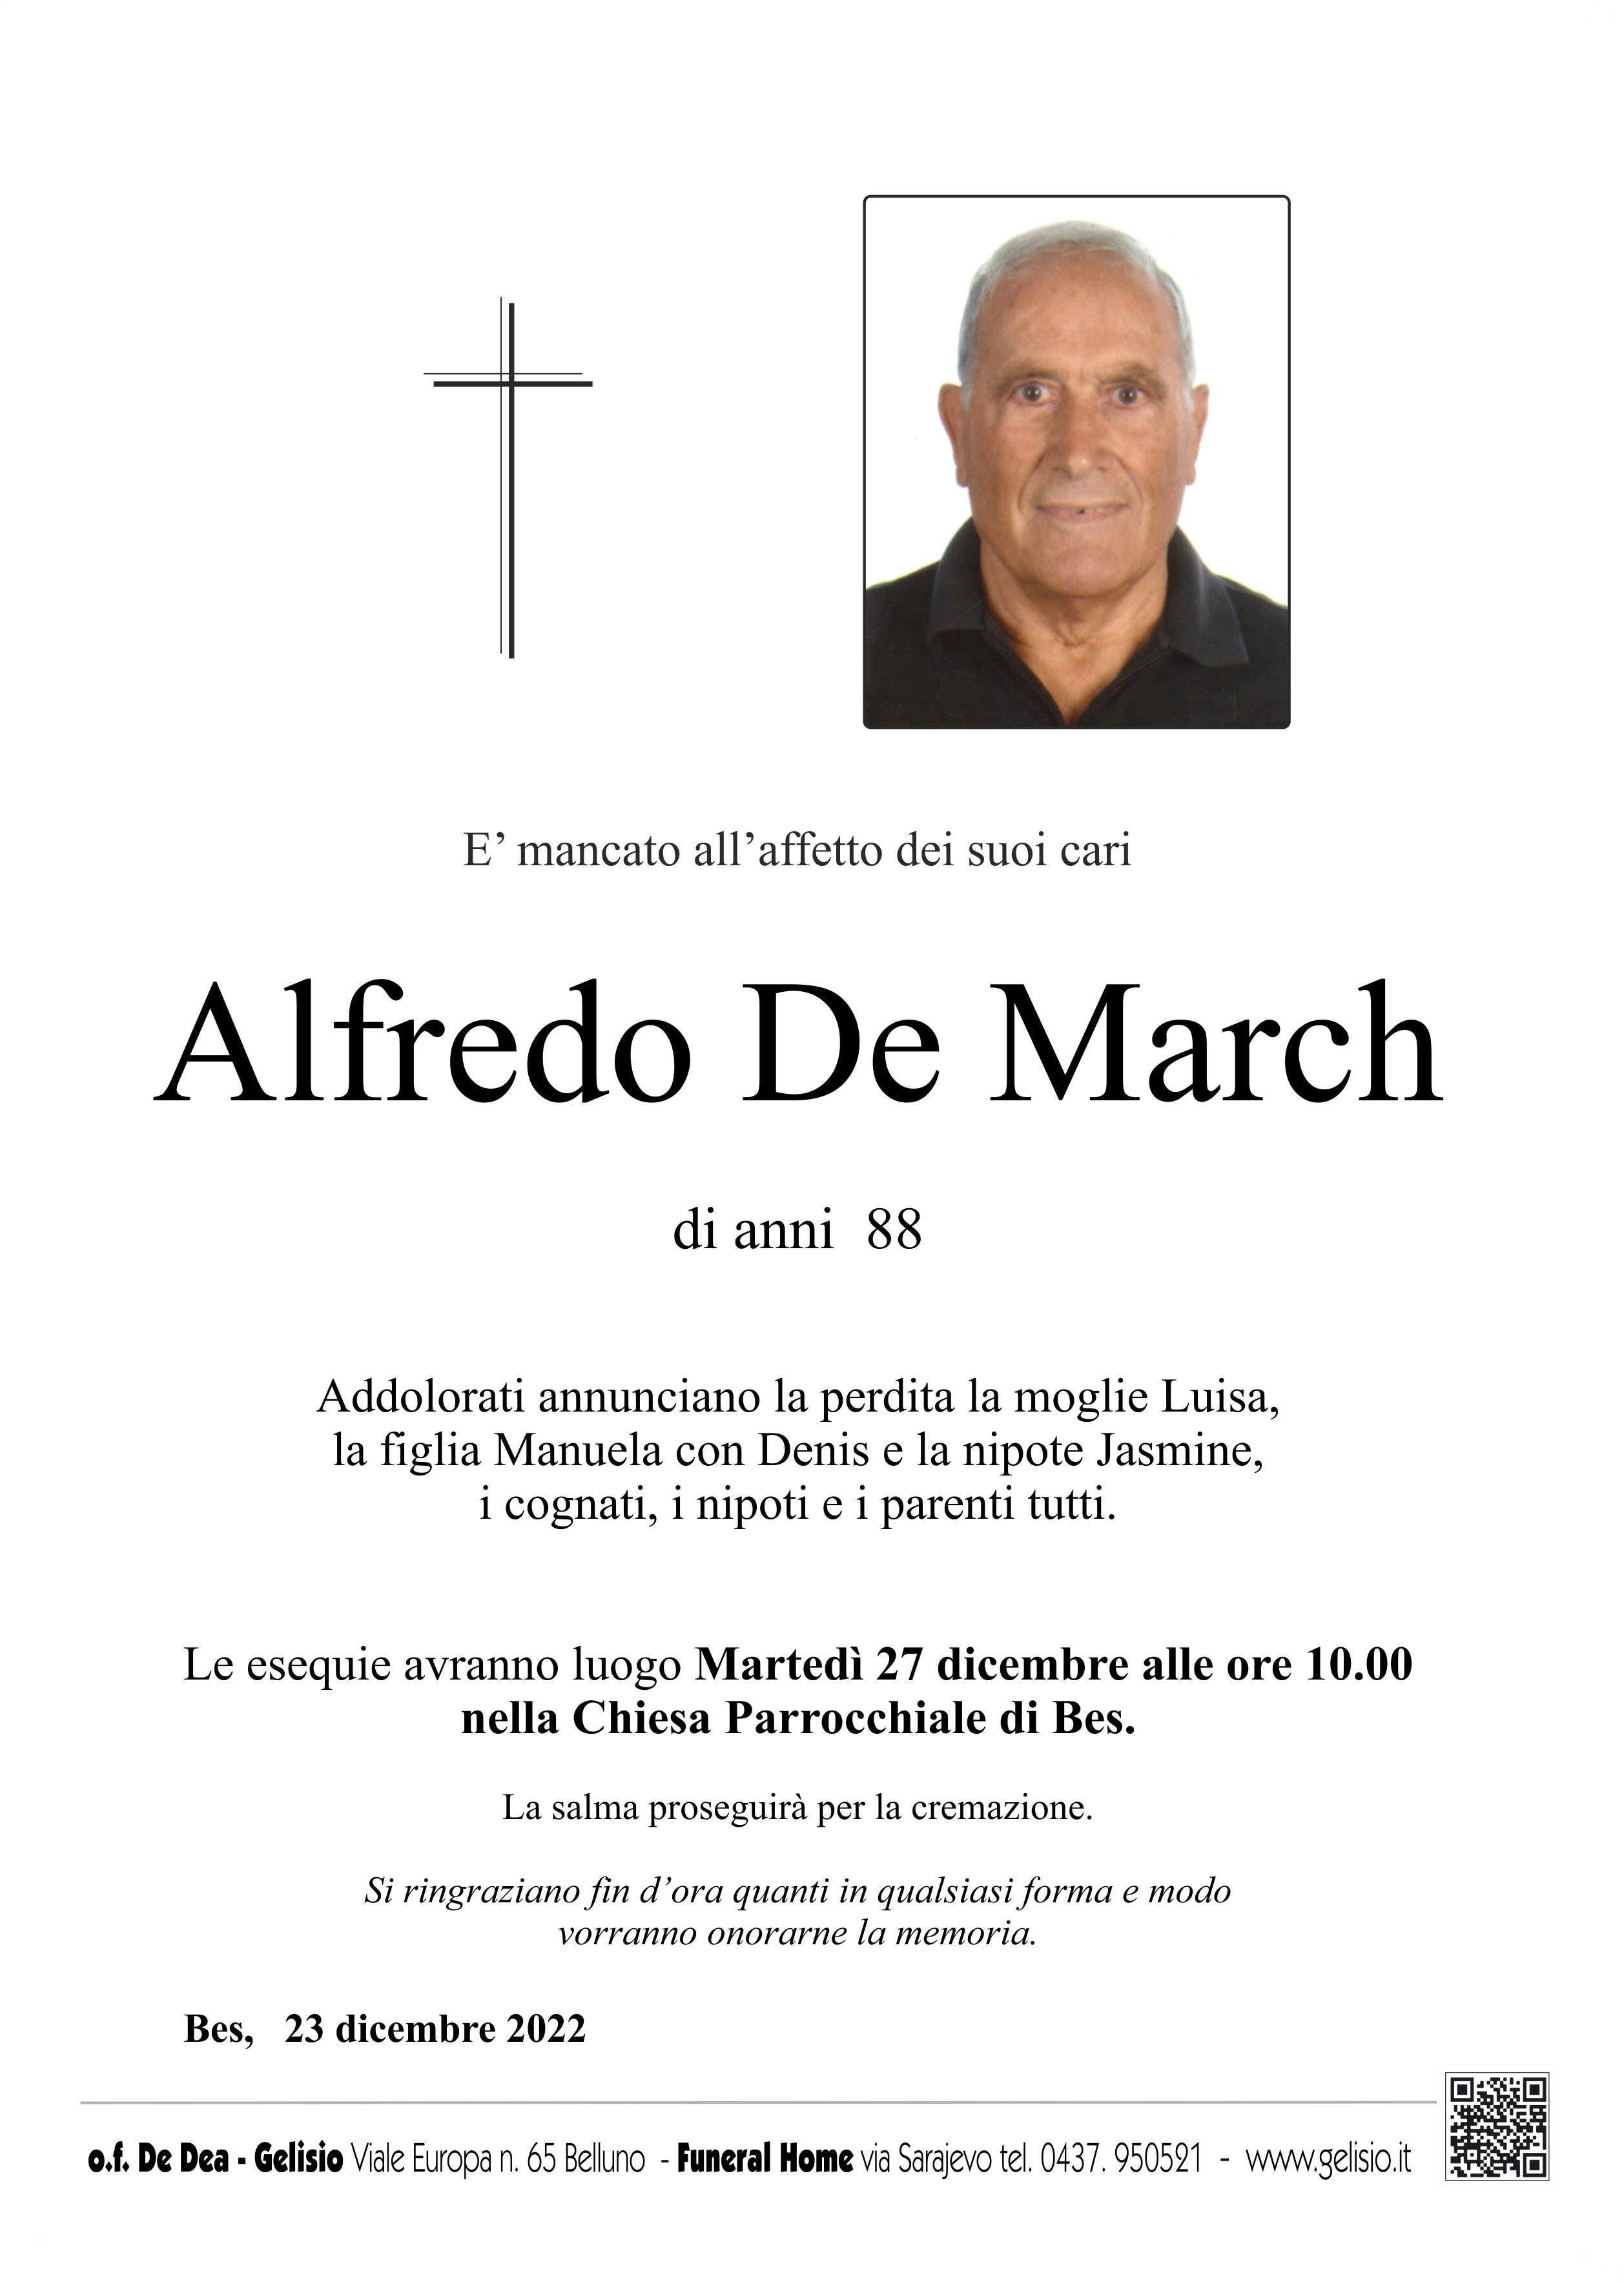 De March Alfredo